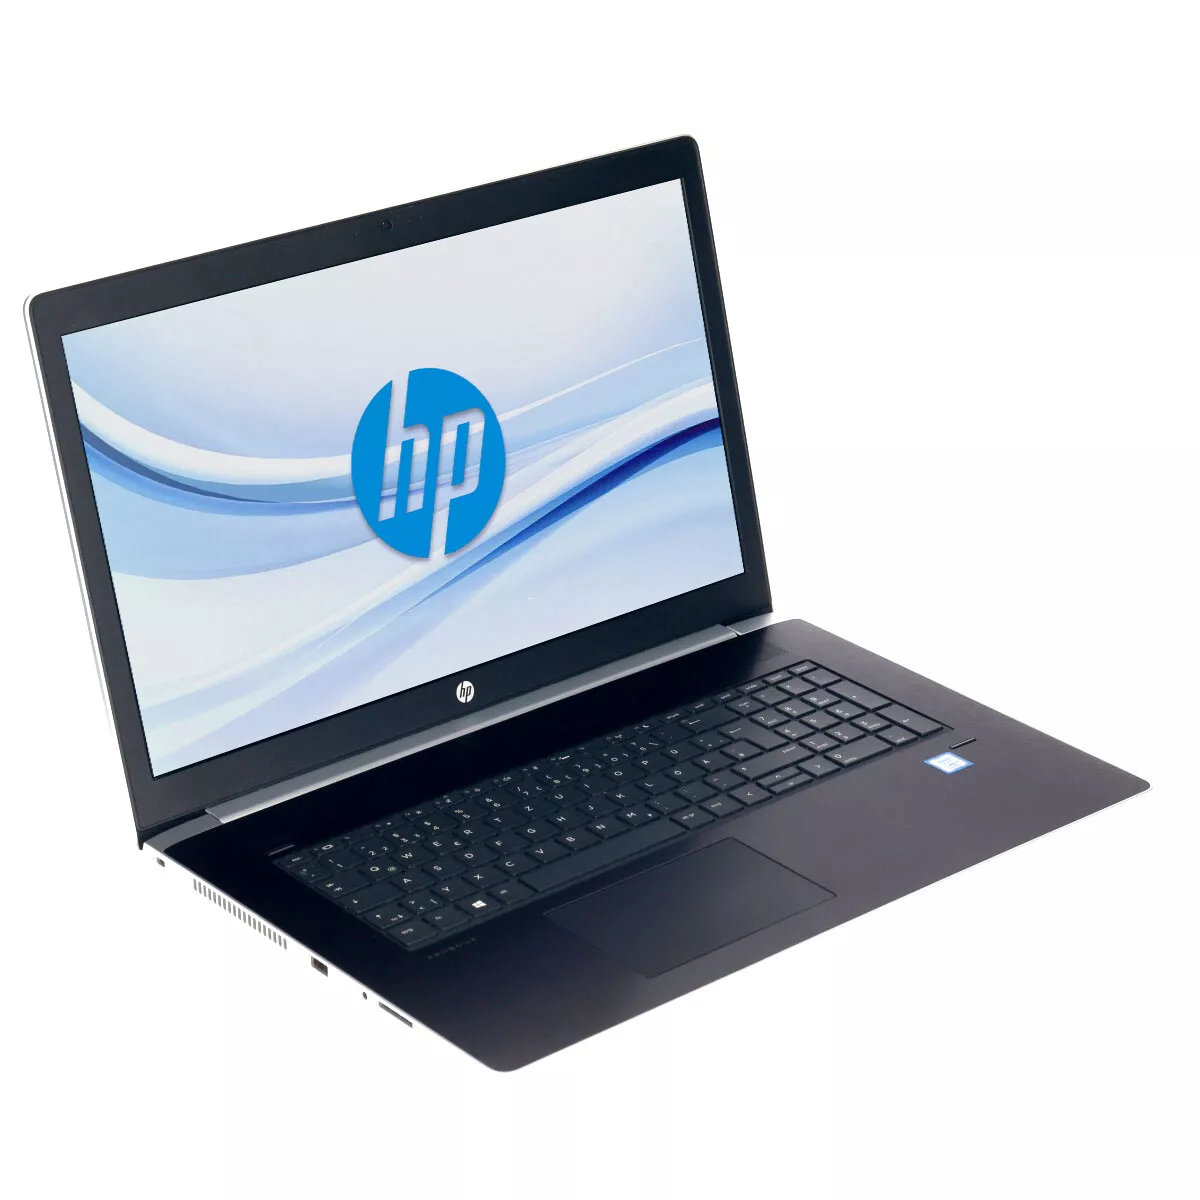 HP ProBook 470 G5 Core i7 8550U 8 GB 240 GB Webcam B